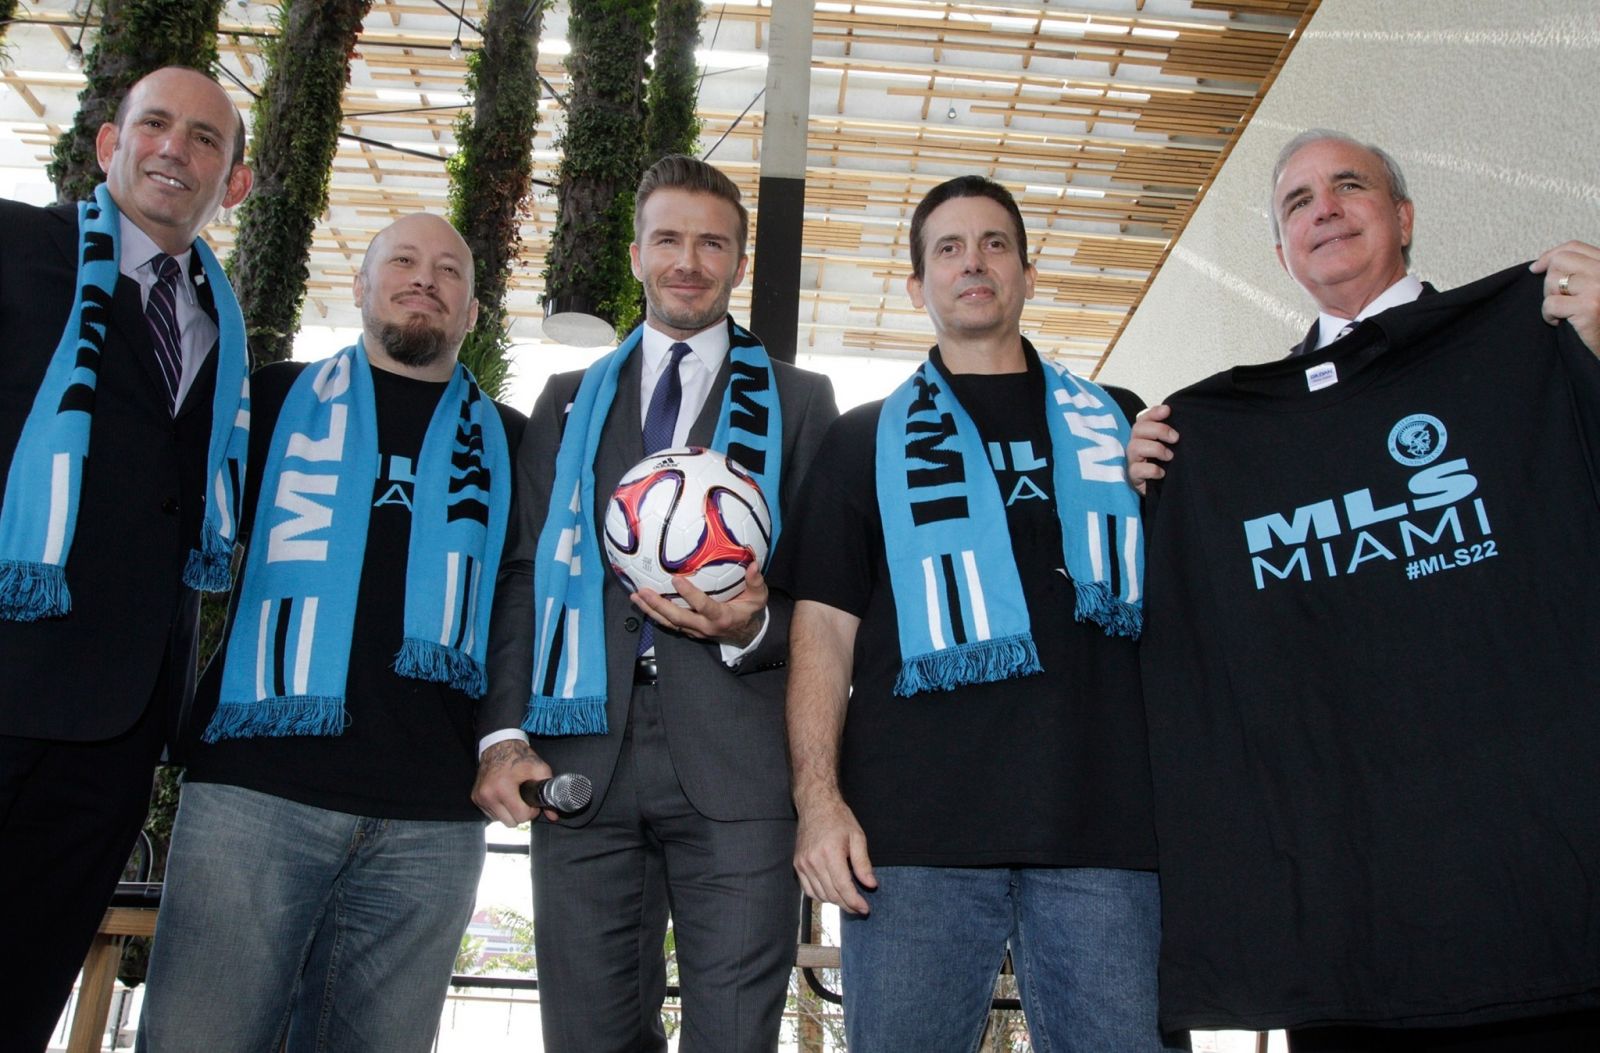 Con el respaldo de Beckham, Miami cumple sueño de tener equipo de fútbol